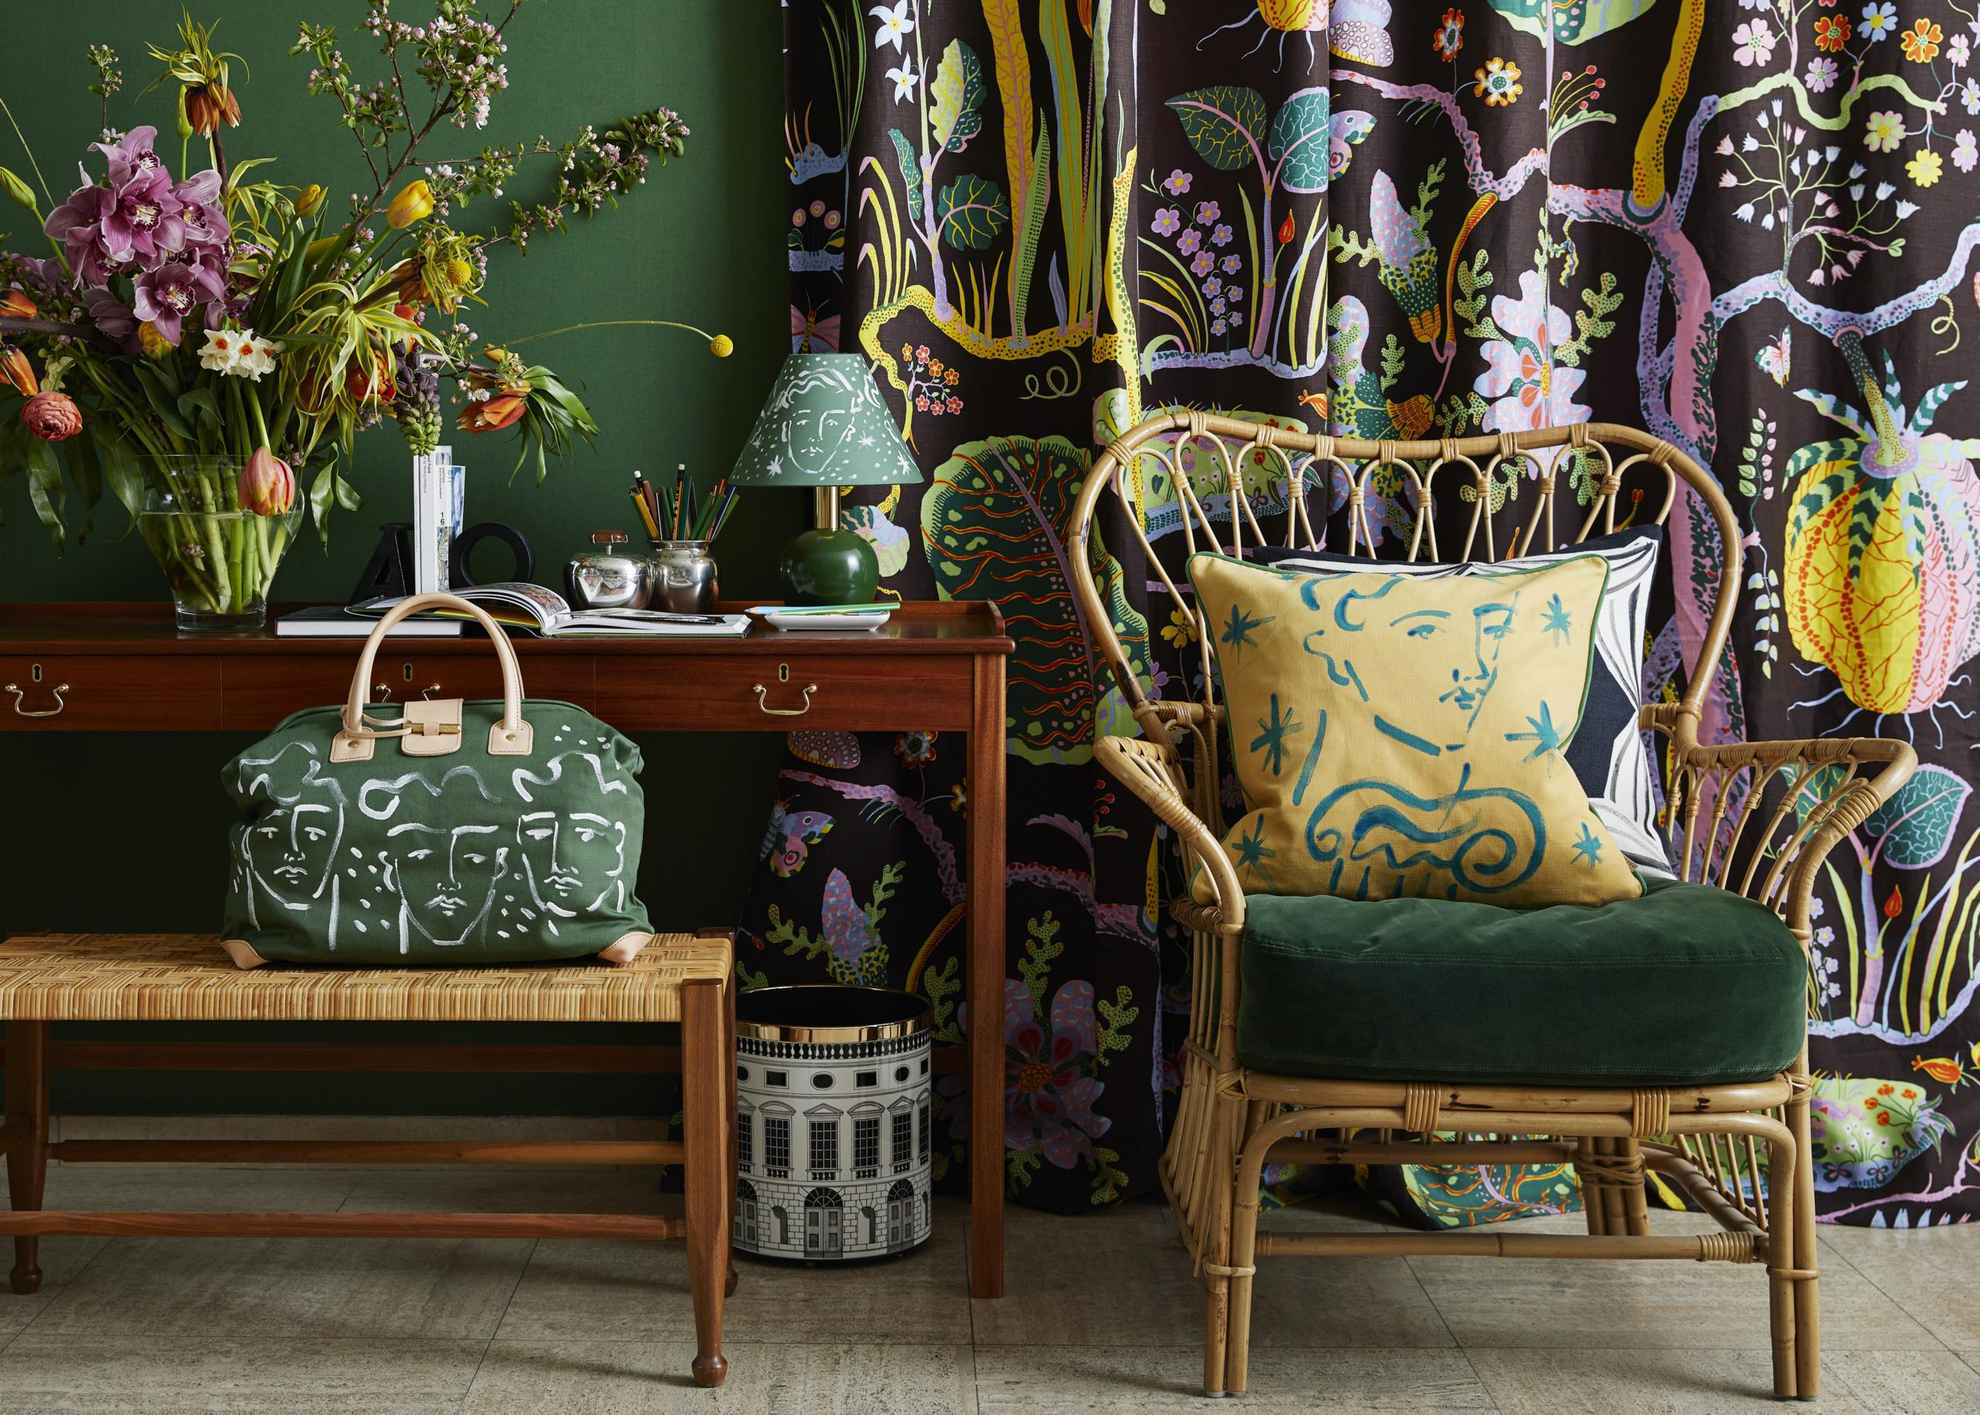 Des fleurs sont disposées dans un vase avec une lampe sur une table à côté d'une chaise avec un coussin. Devant la table se trouve un sac posé sur un tabouret  Derrière la chaise se trouve un rideau à motifs colorés.